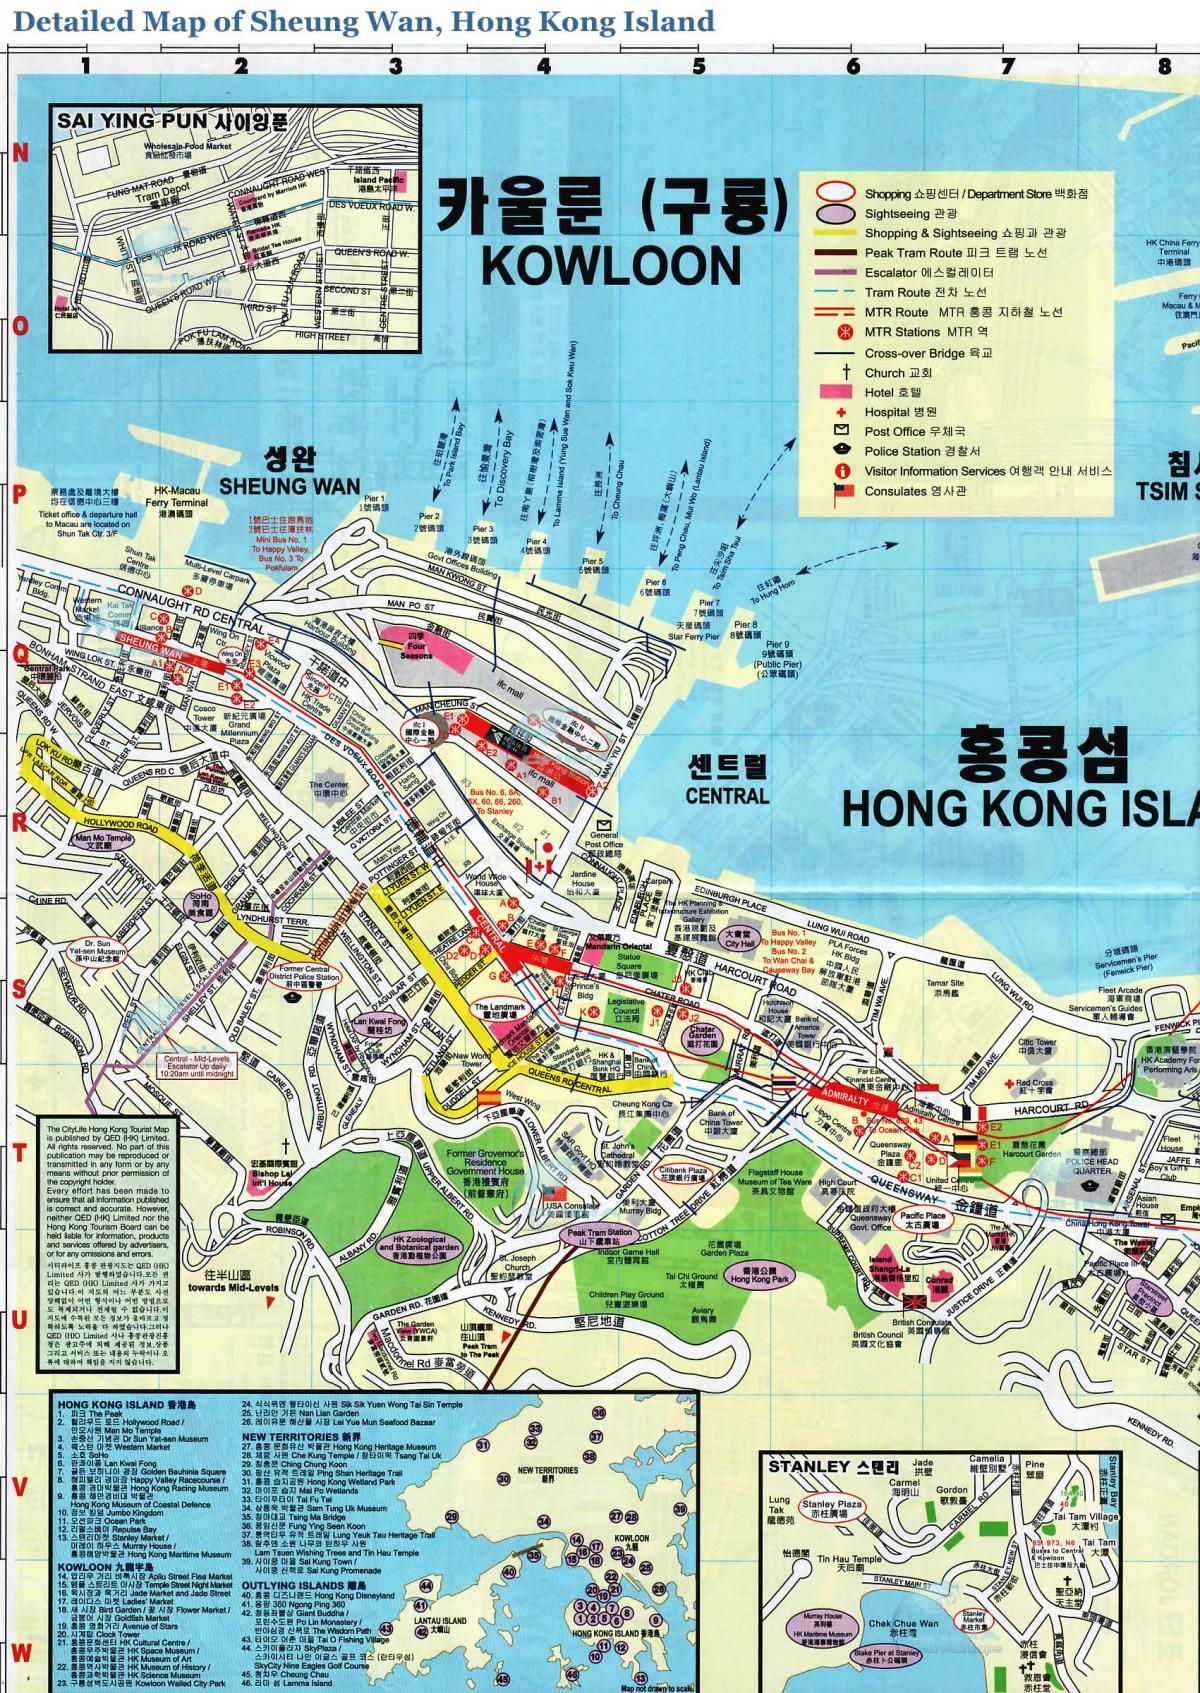 ramani ya Sheung Wan Hong Kong